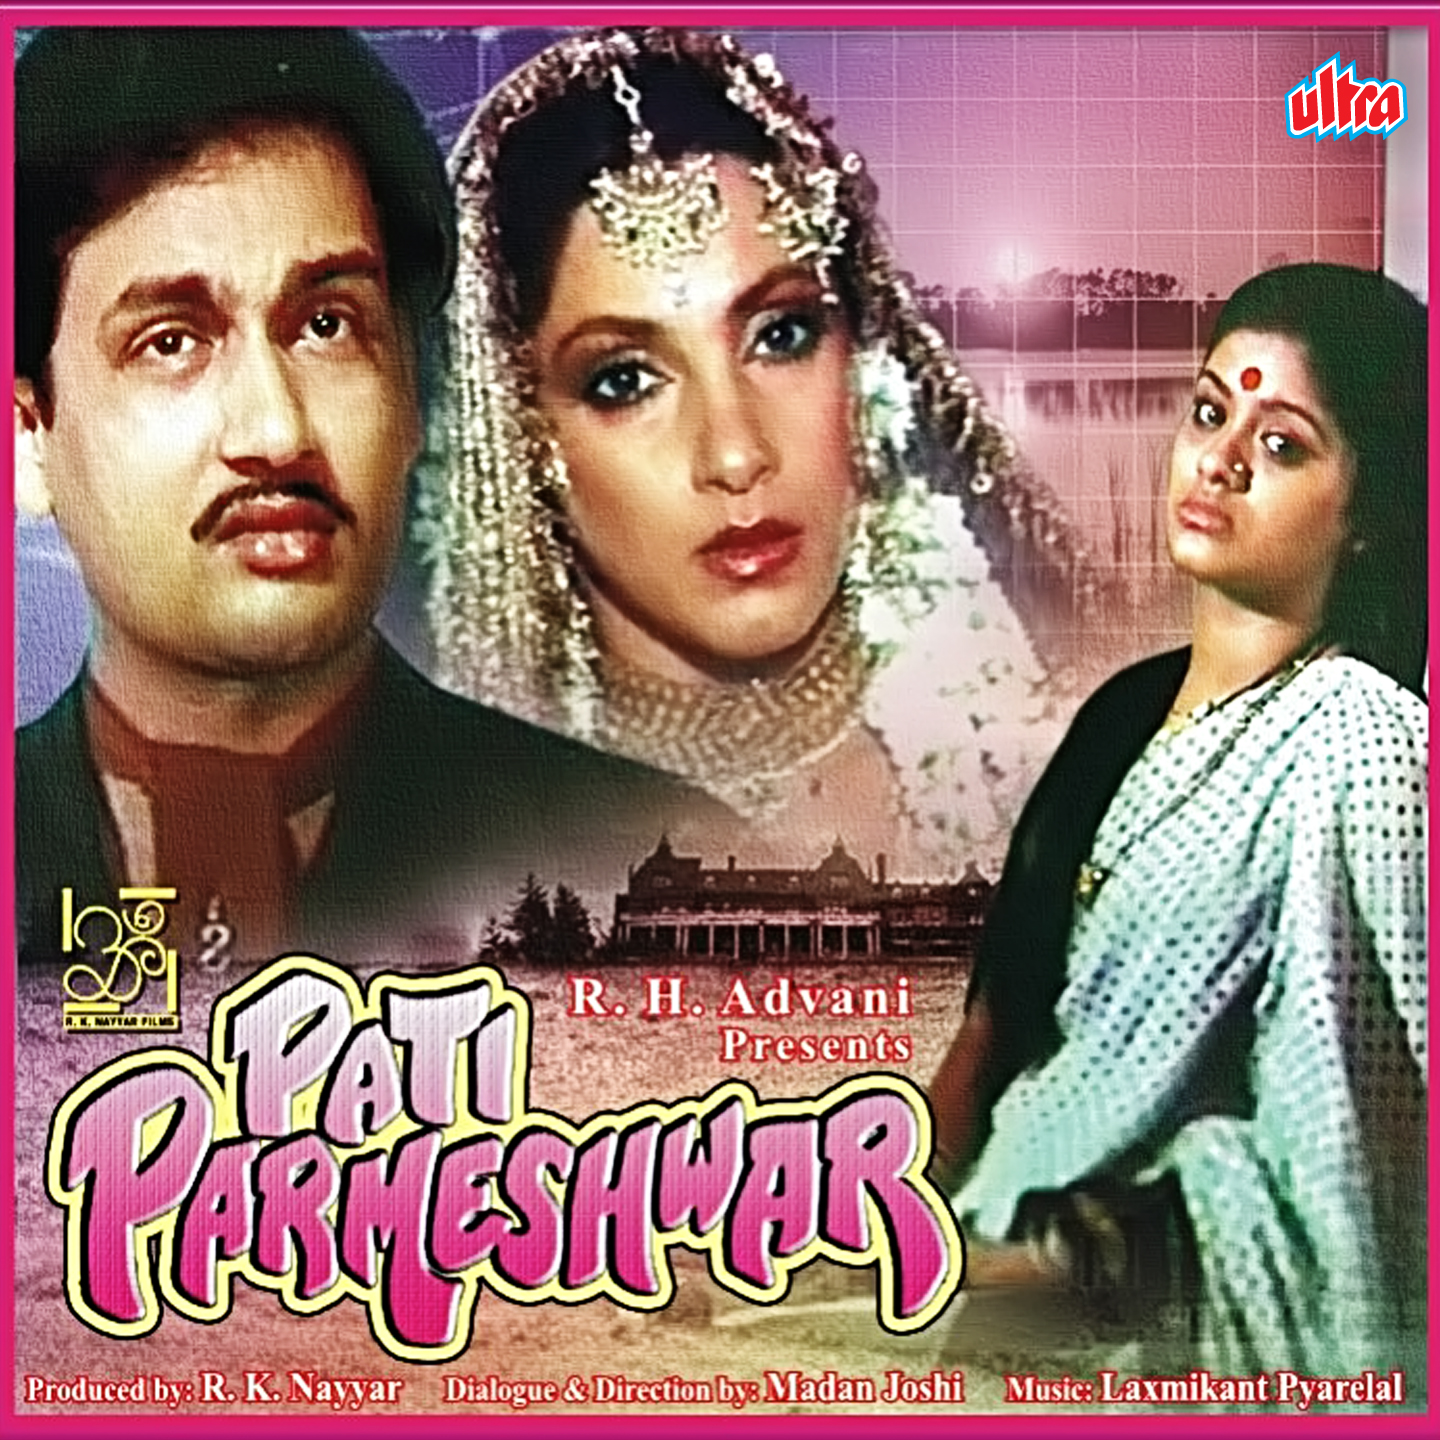 Pati parmeshwar 1990 movie